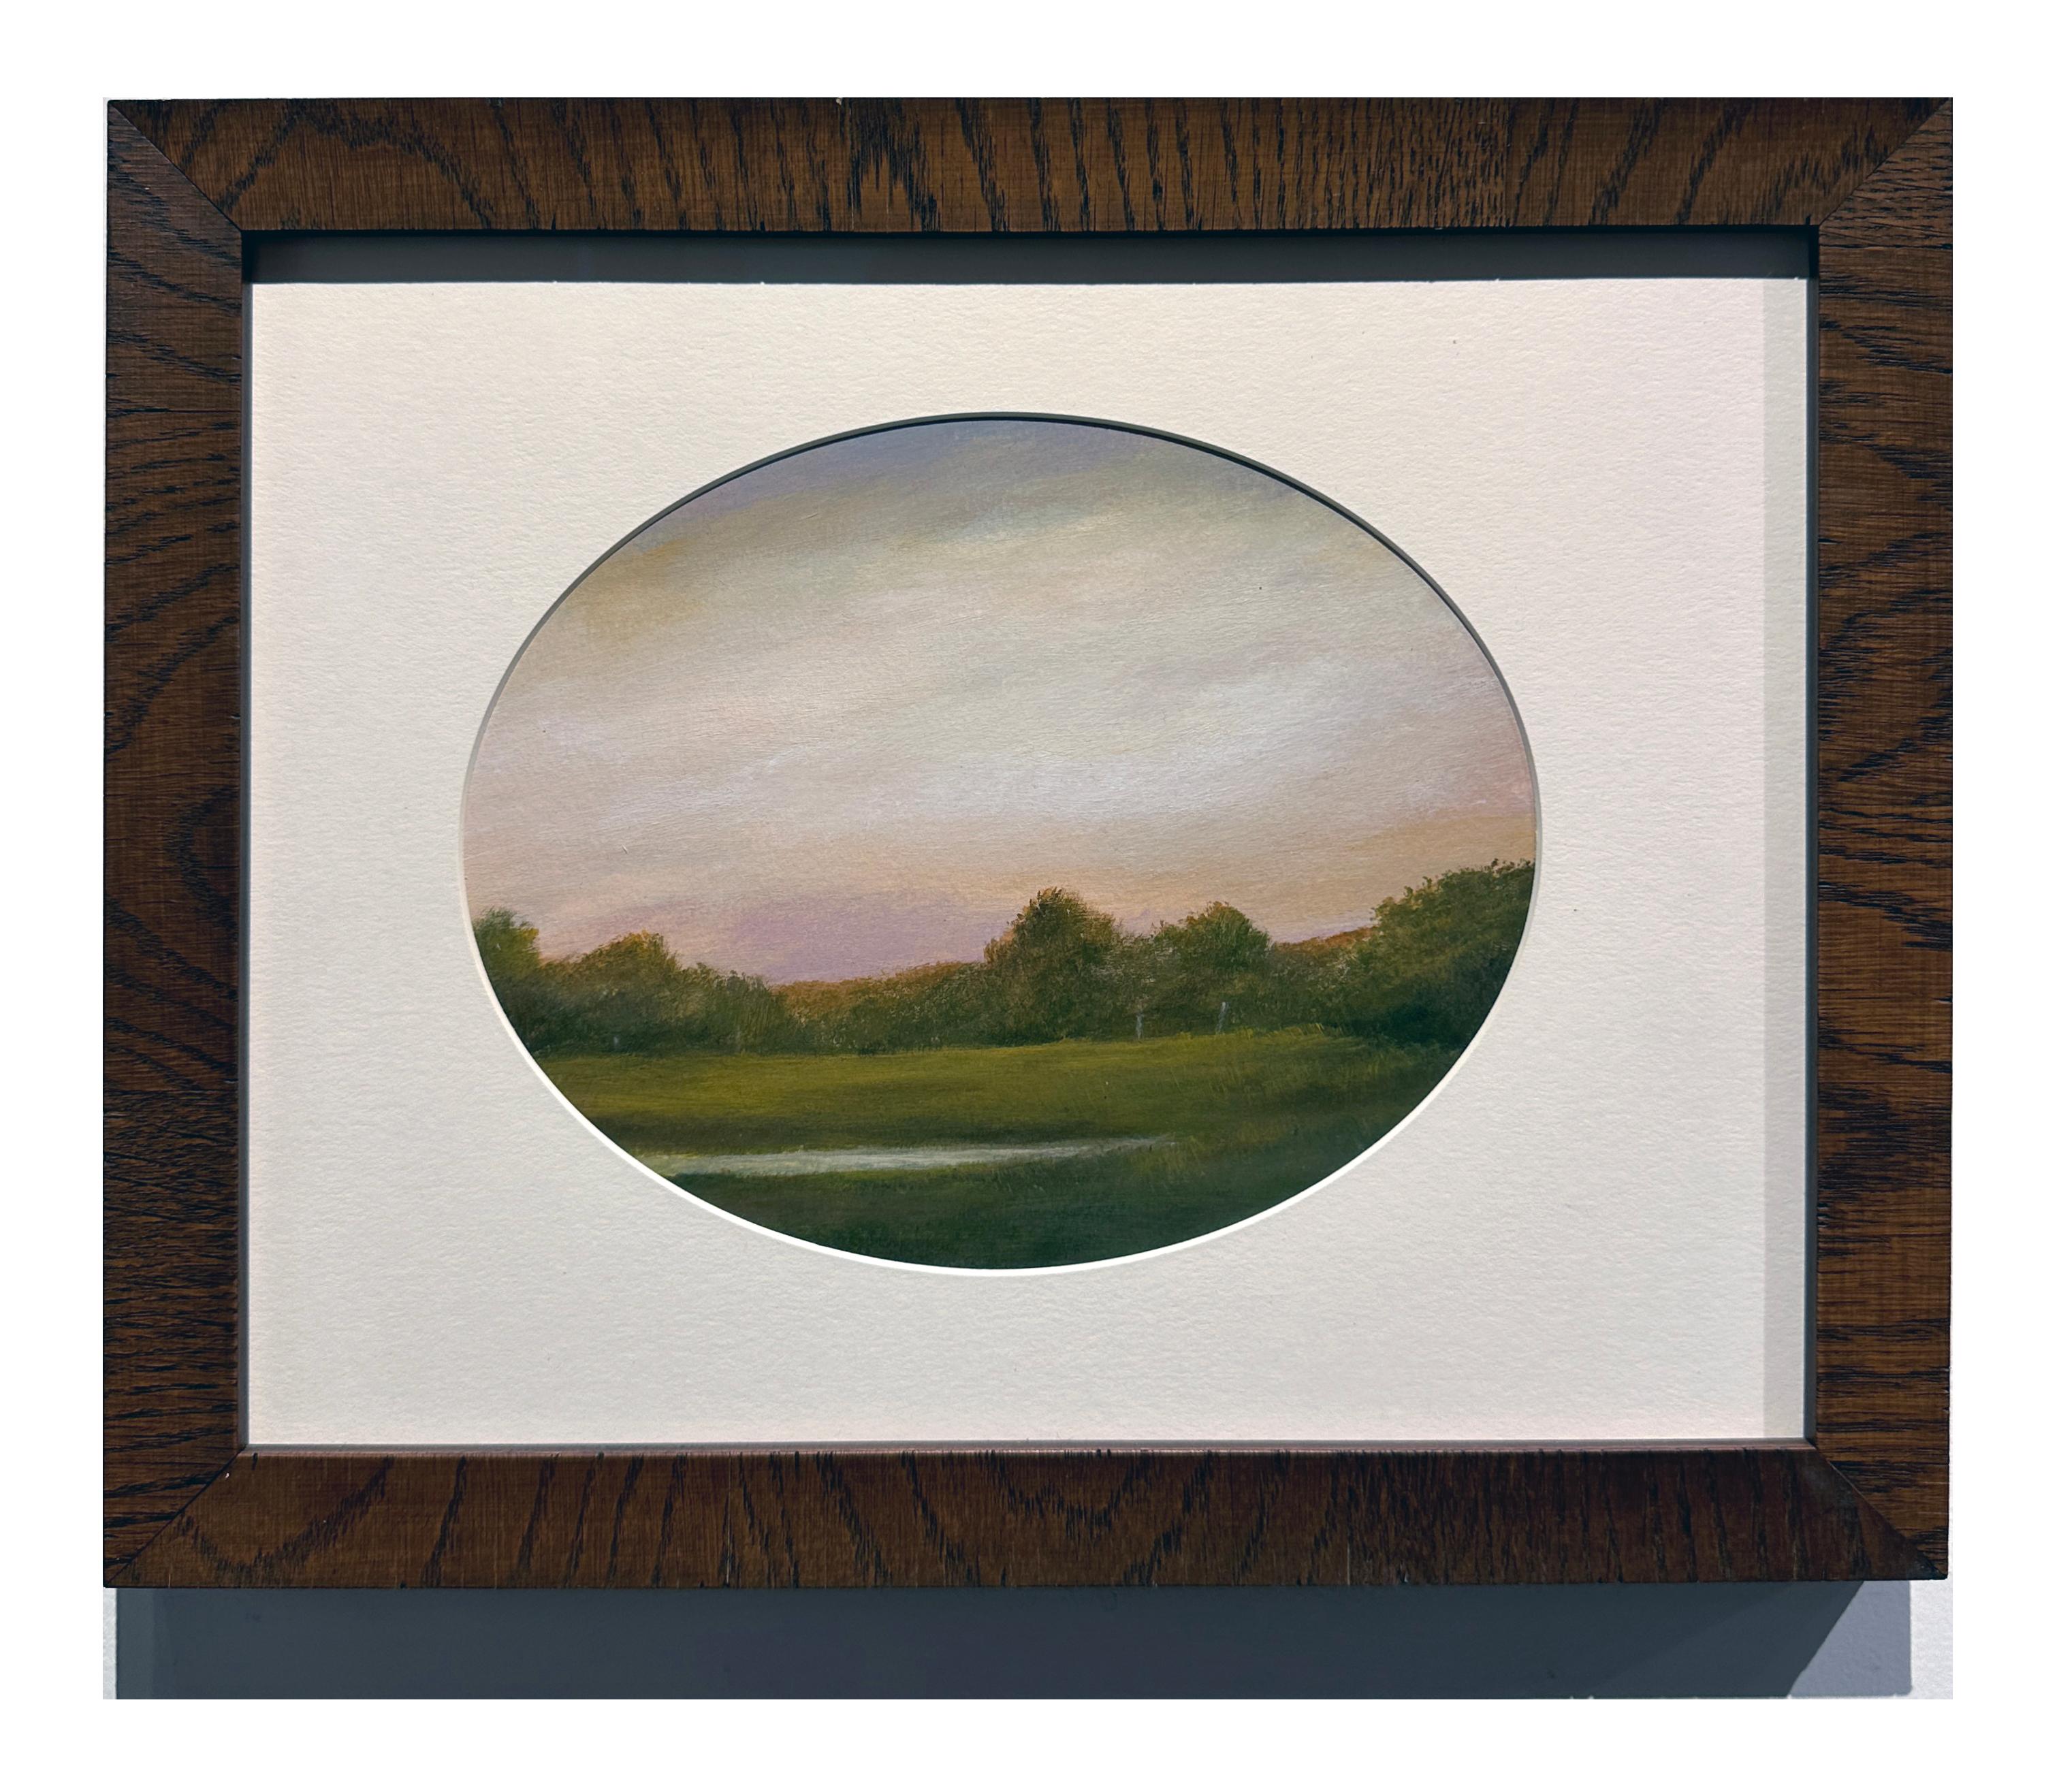 Teich und Wolken – ruhige Landschaft, Teich mit Holzumrandung und verträumtem Himmel – Painting von Ahzad Bogosian